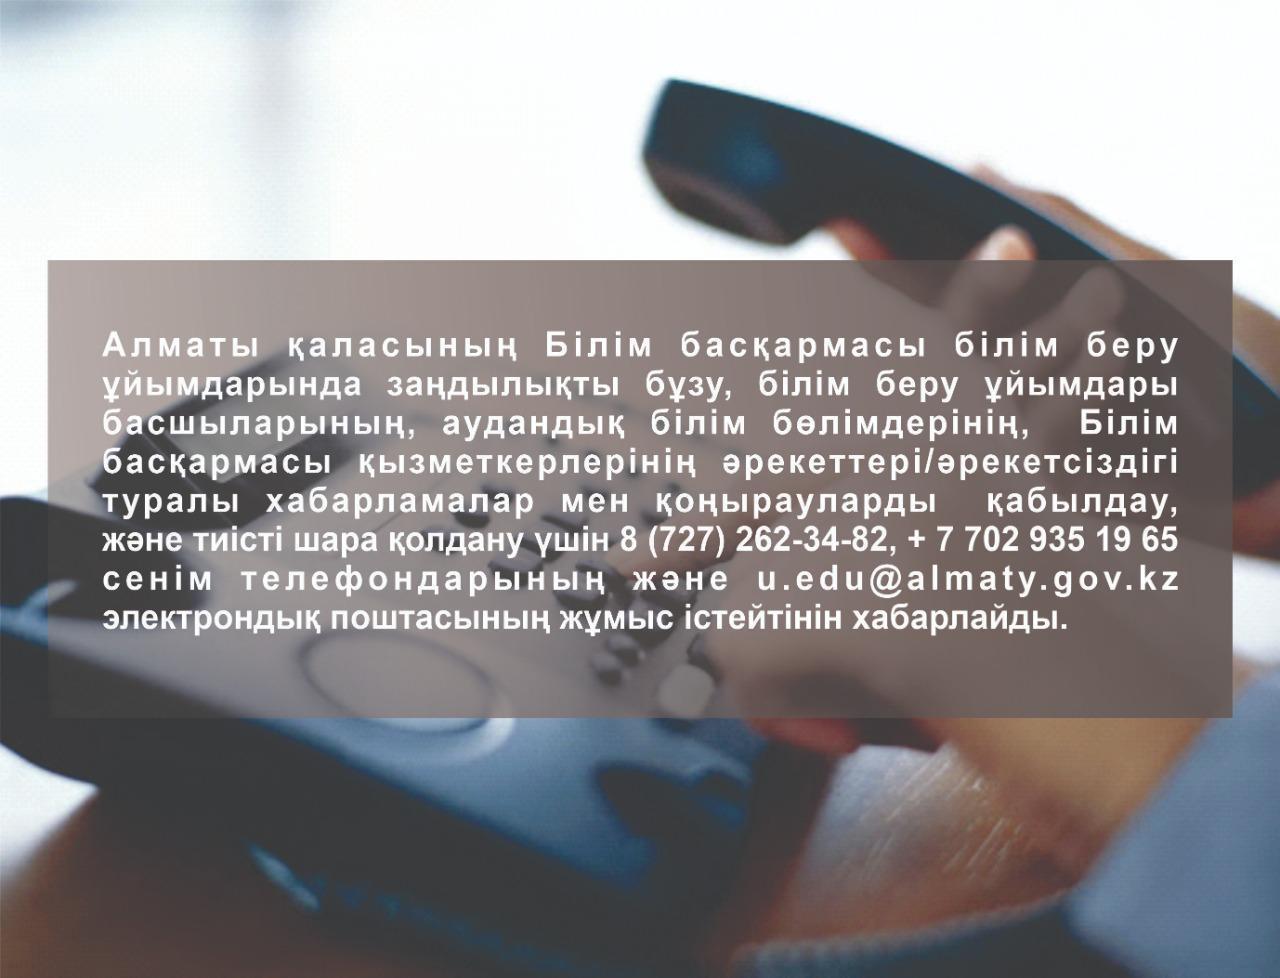 Управление образования города Алматы информирует о работе телефонов доверия и электронной почты